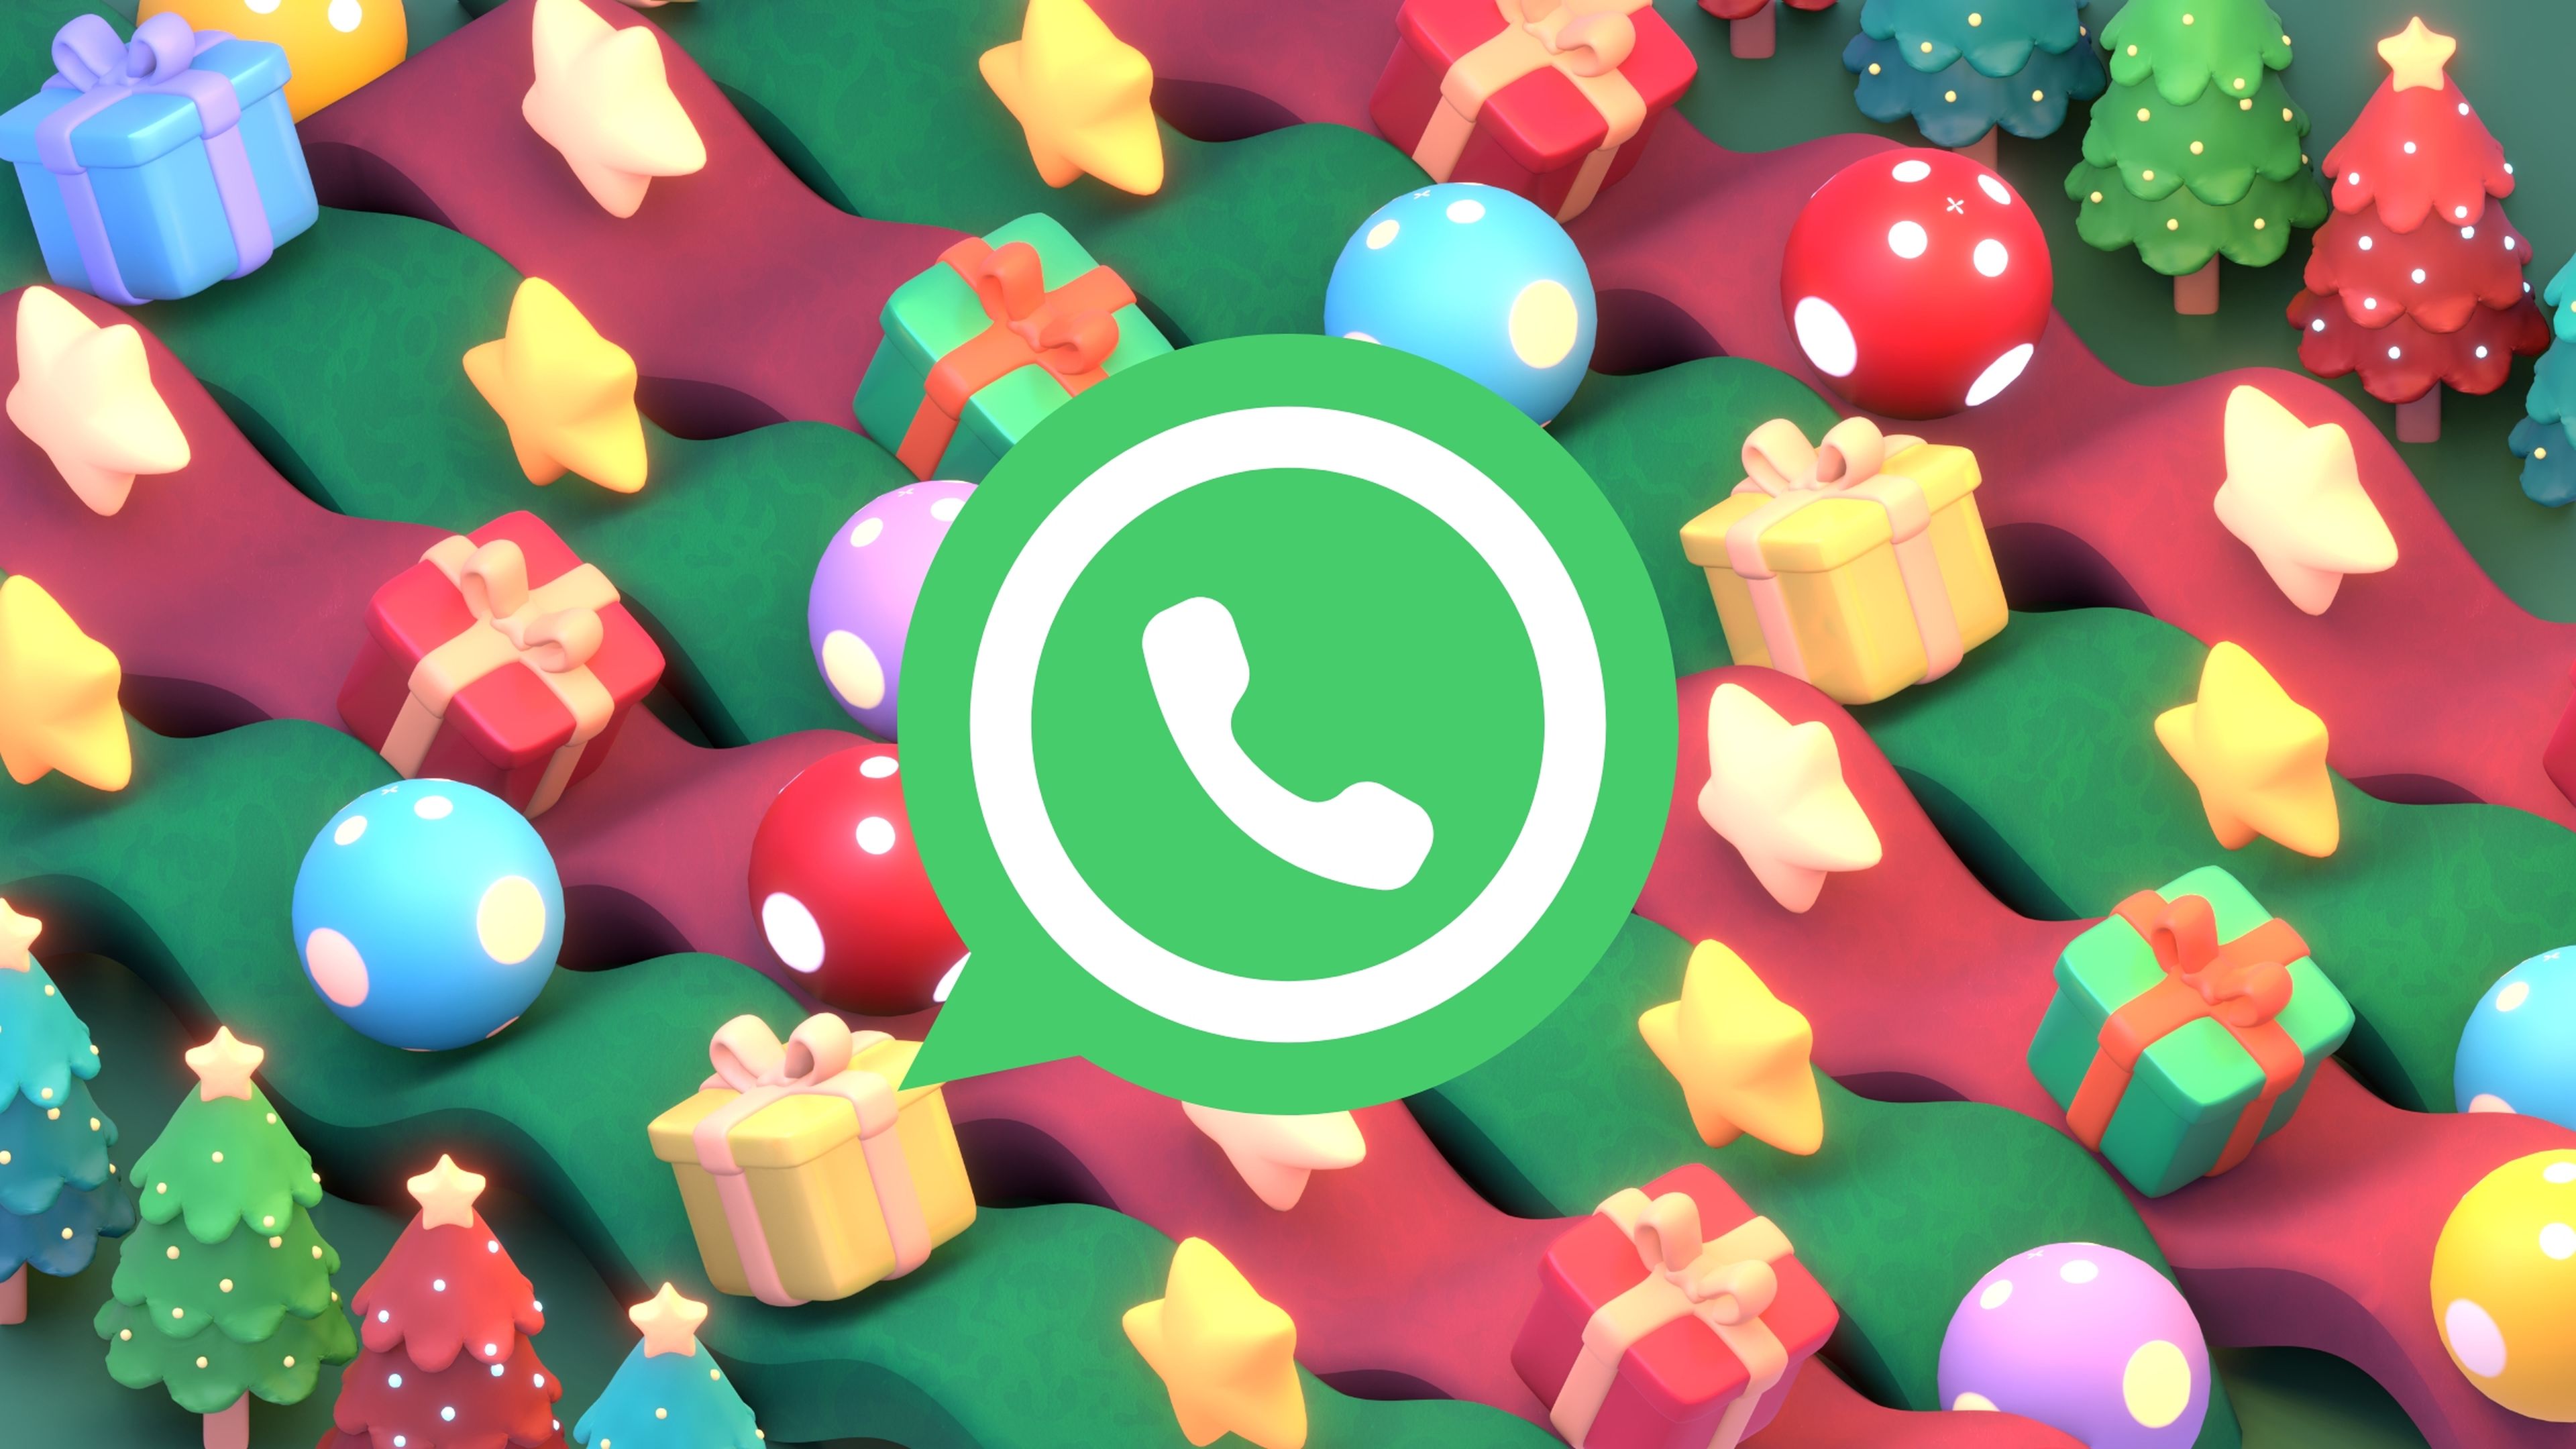 Amigo invisible por WhatsApp: cómo hacer el sorteo y enviar los mensajes secretos